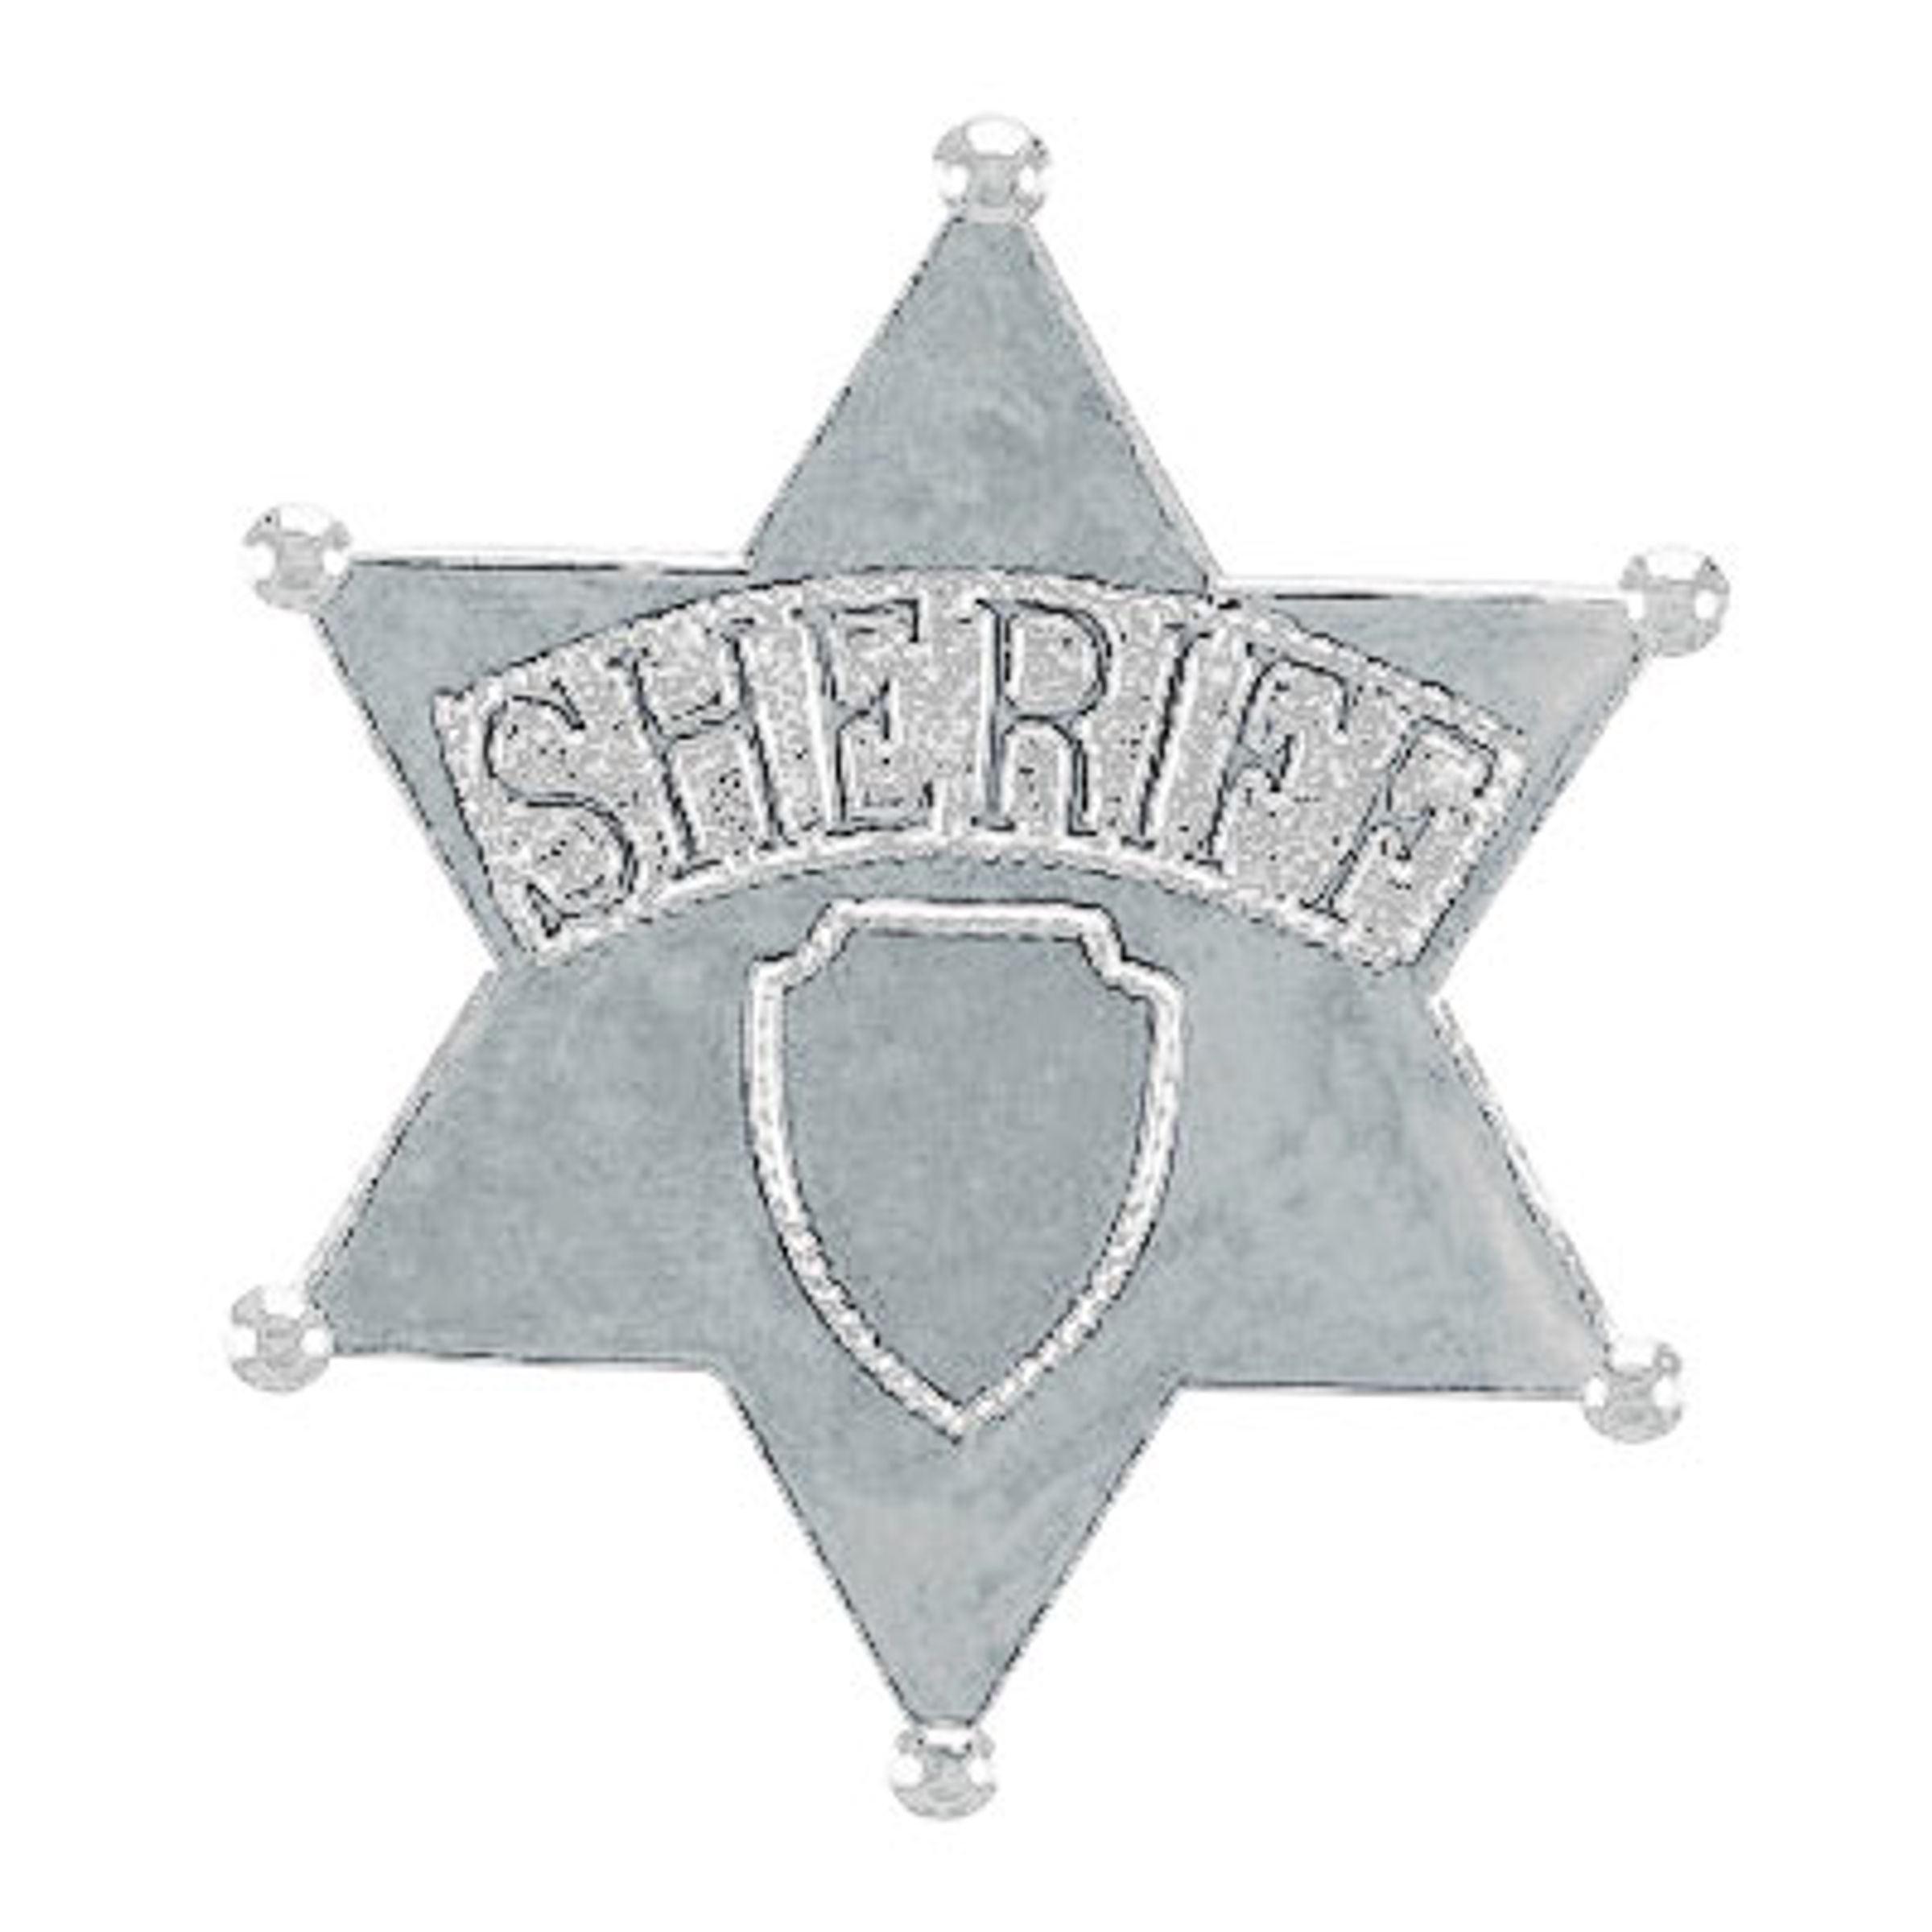 Sheriffstjärna